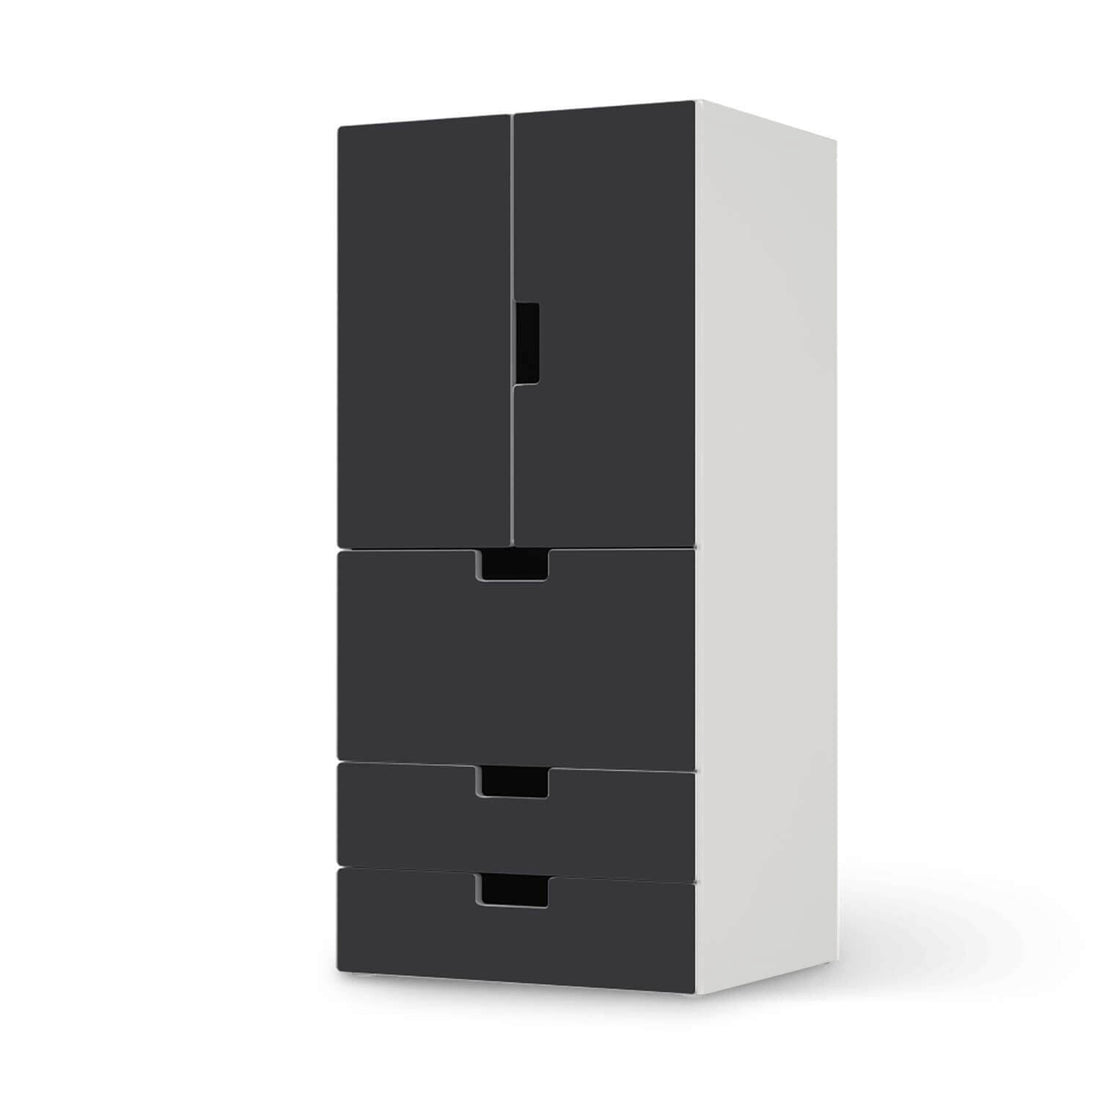 Möbelfolie Grau Dark - IKEA Stuva kombiniert - 3 Schubladen und 2 kleine Türen  - weiss